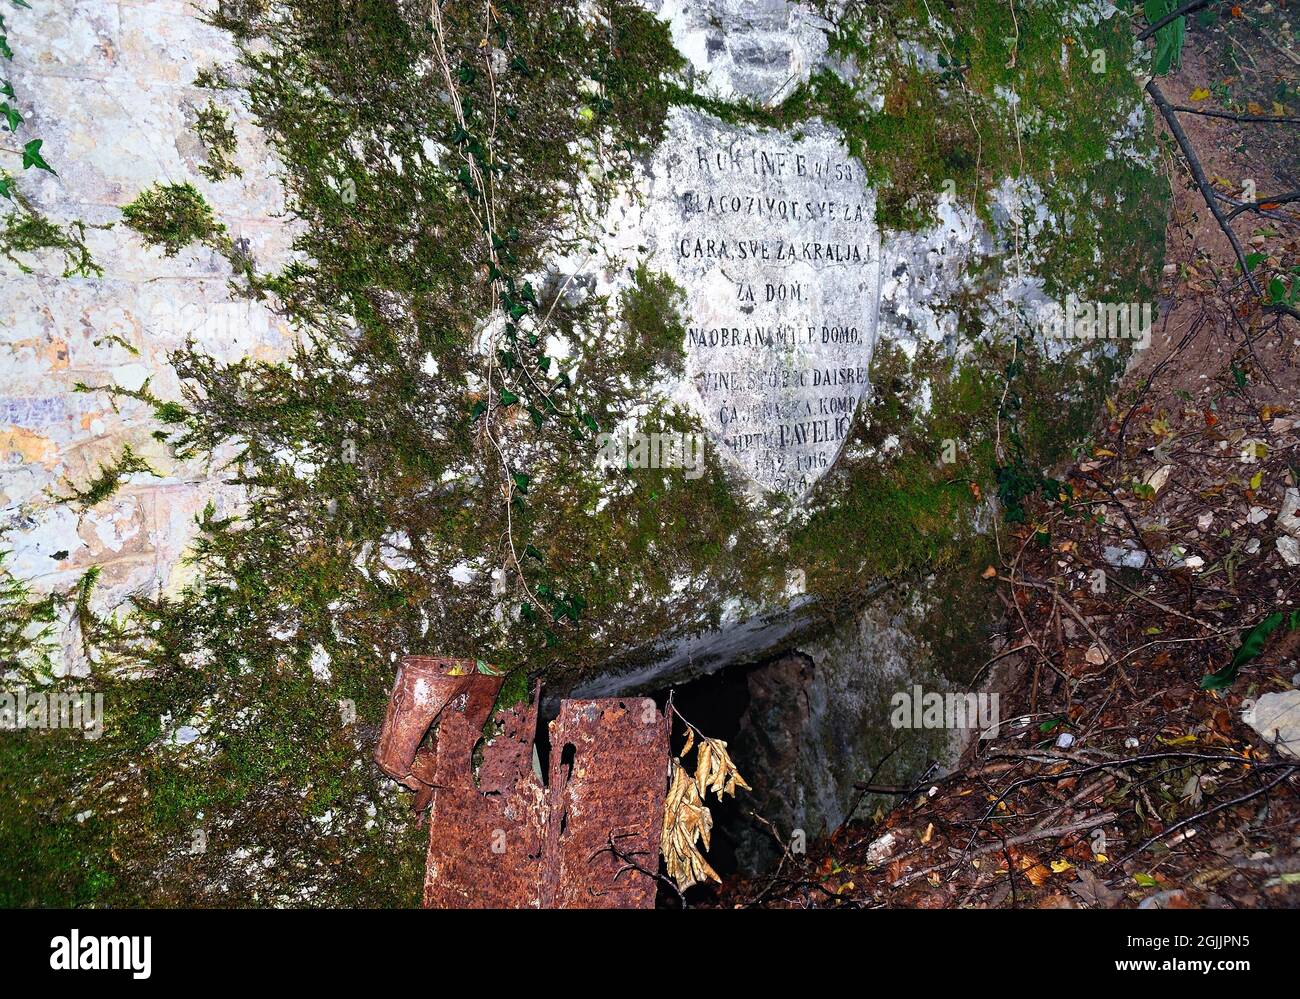 Slowenien, Mengore Hill, 1. Weltkrieg. An einem abgelegenen Ort, der mit einigen Schwierigkeiten erreicht werden kann, entlang des österreichischen Grabens, der bis auf eine Höhe von 510 m ansteigt.Blick auf den Fluss Soca, gibt es ein großes Wappen, eingraviert auf dem Felsen. Es ist am Eingang einer verschlick-up-Höhle zu sehen. Die kroatische Inschrift besagt: „Gott rettet die tapfere Kraft von Capt. Pavelisch bei der Verteidigung seines geliebten Landes“. Auf einer Seite des Höhleneingangs befindet sich ein Metallofen. Stockfoto